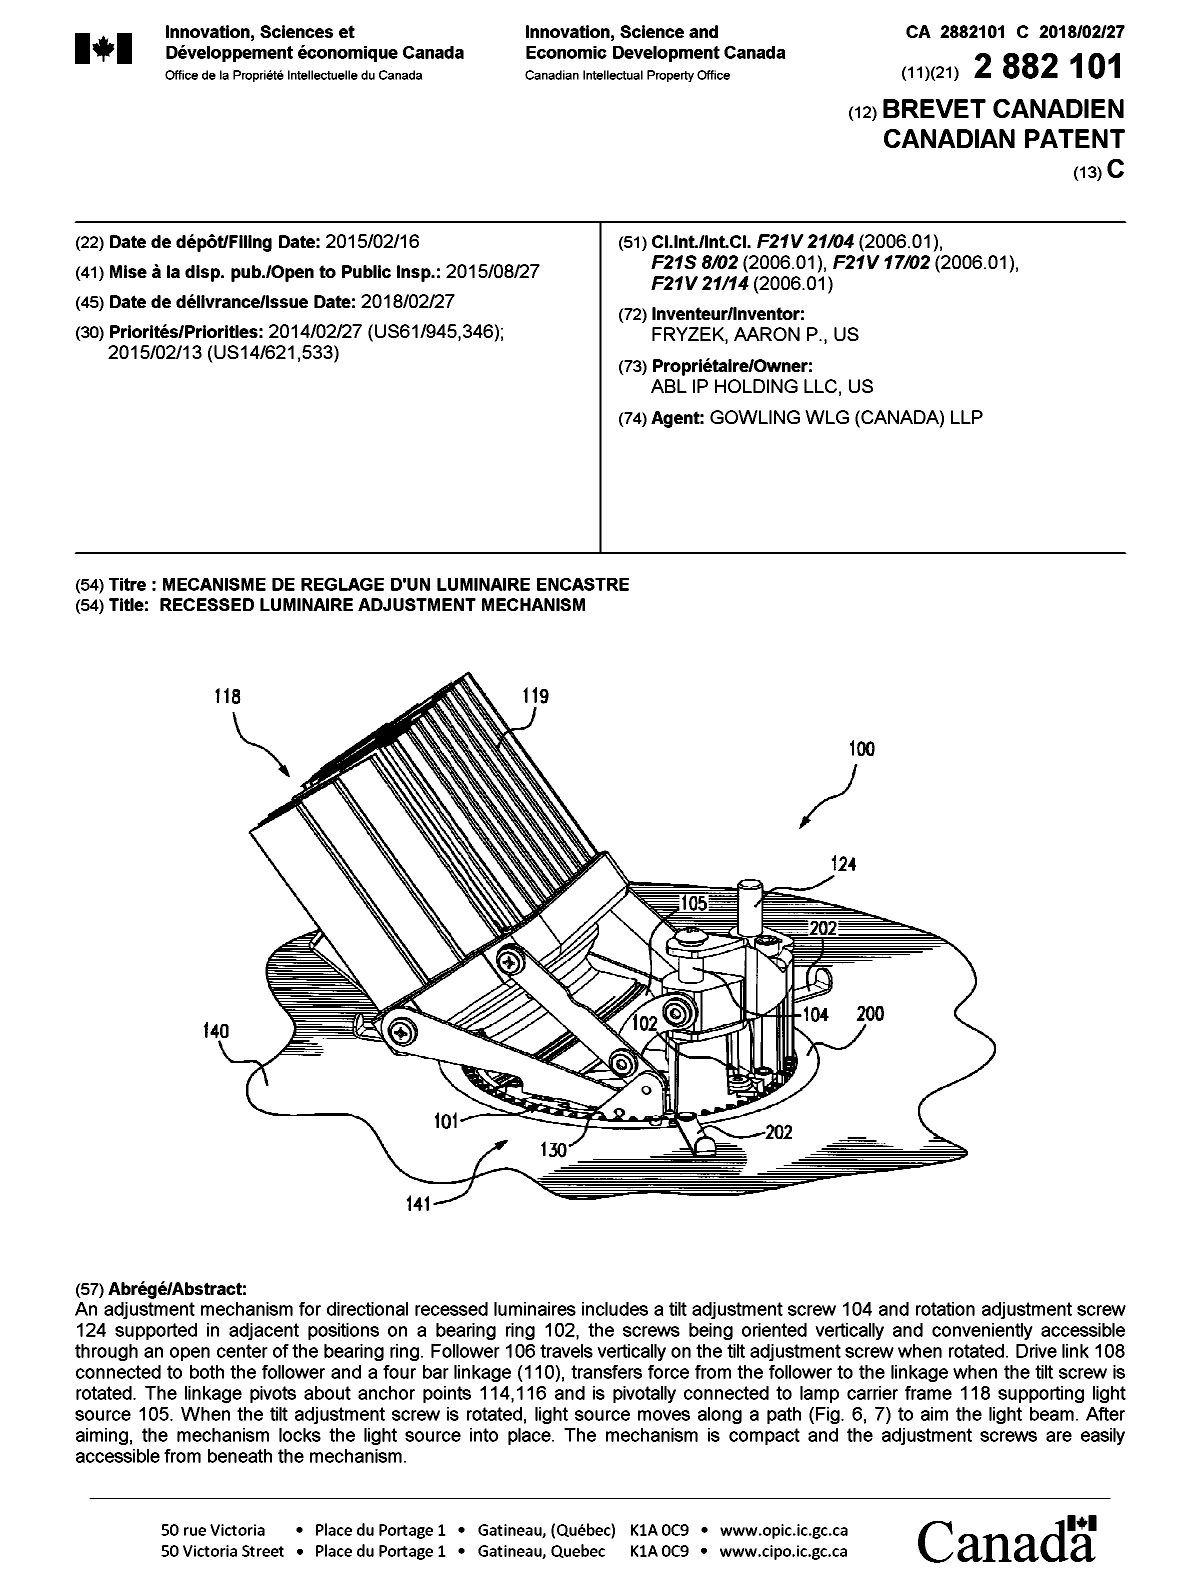 Document de brevet canadien 2882101. Page couverture 20180202. Image 1 de 1